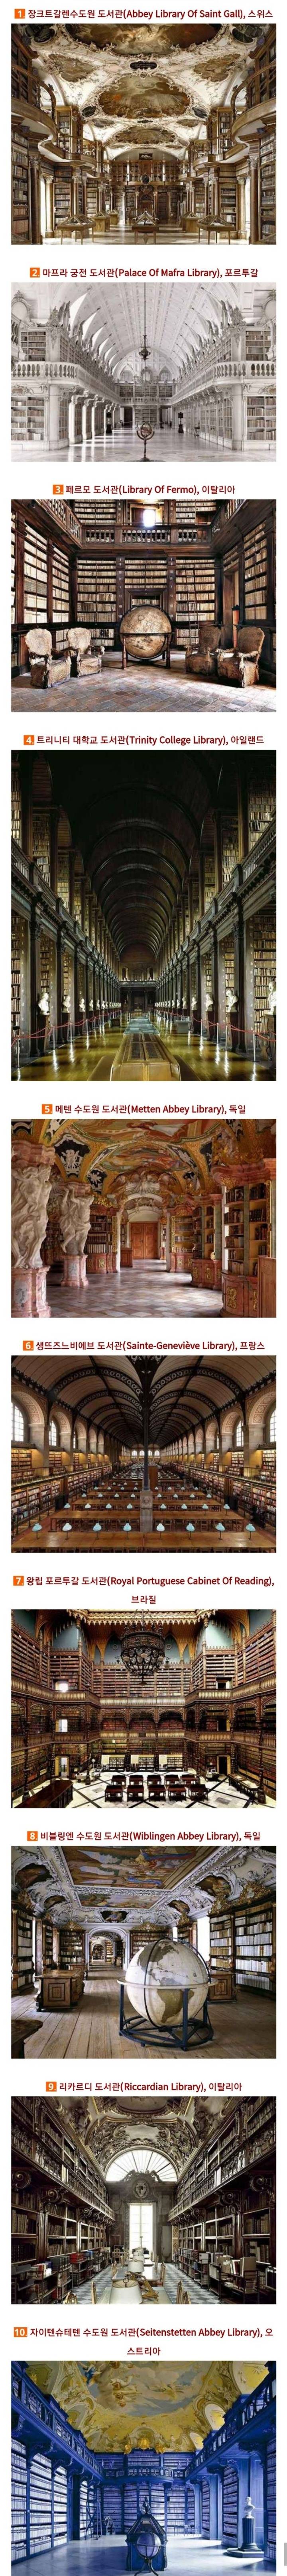 세계에서 가장 아름다운 도서관 베스트 .jpg | 인스티즈